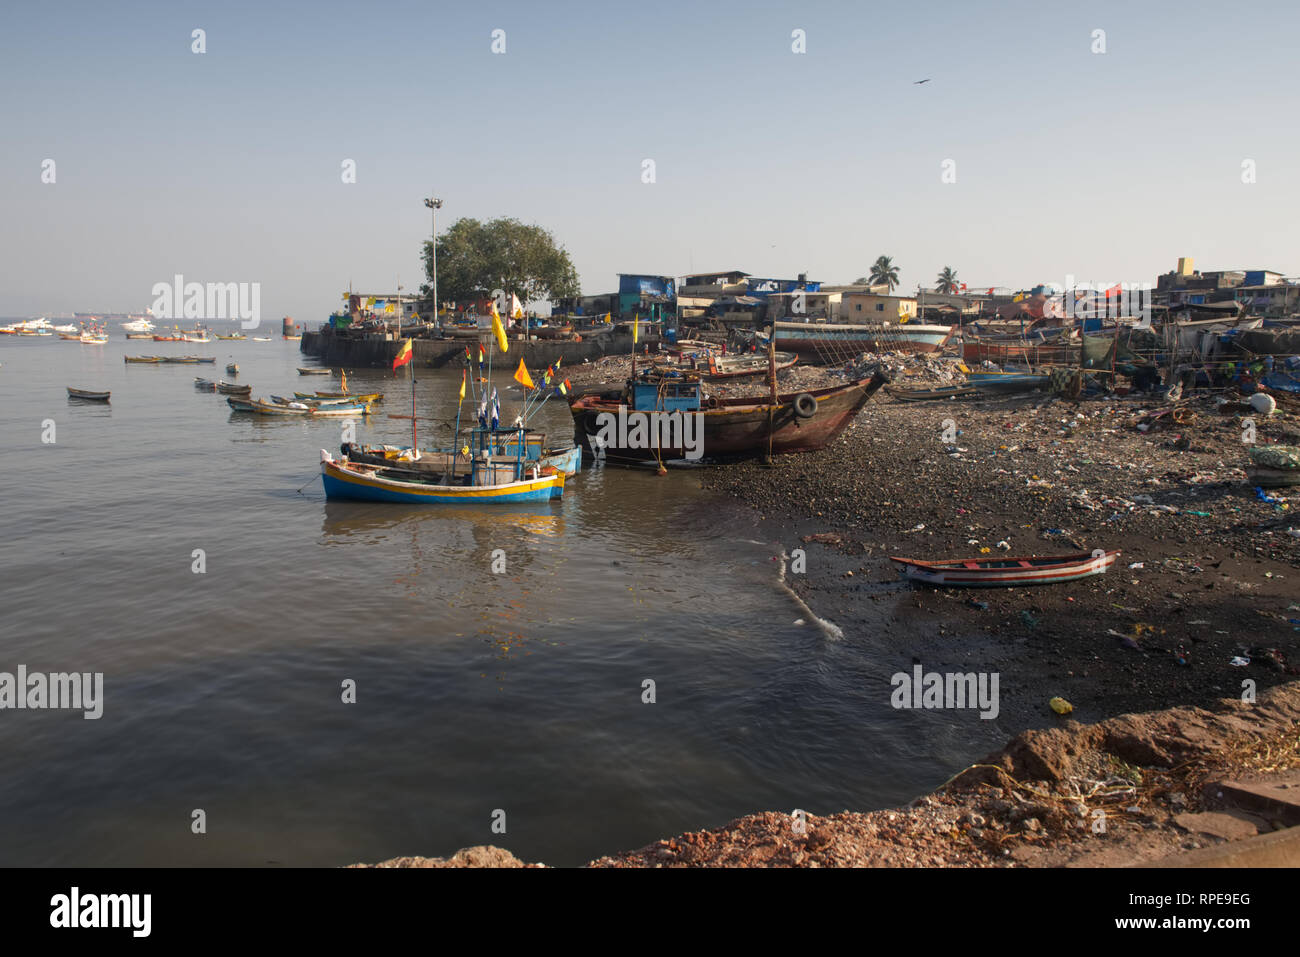 Marine übersät angrenzenden Strand Mumbai Fischerdorf. Fischerfamilien Schuld Stadt Entwicklung, Verschmutzung und Überfischung für den Rückgang der Fischbestände. Stockfoto